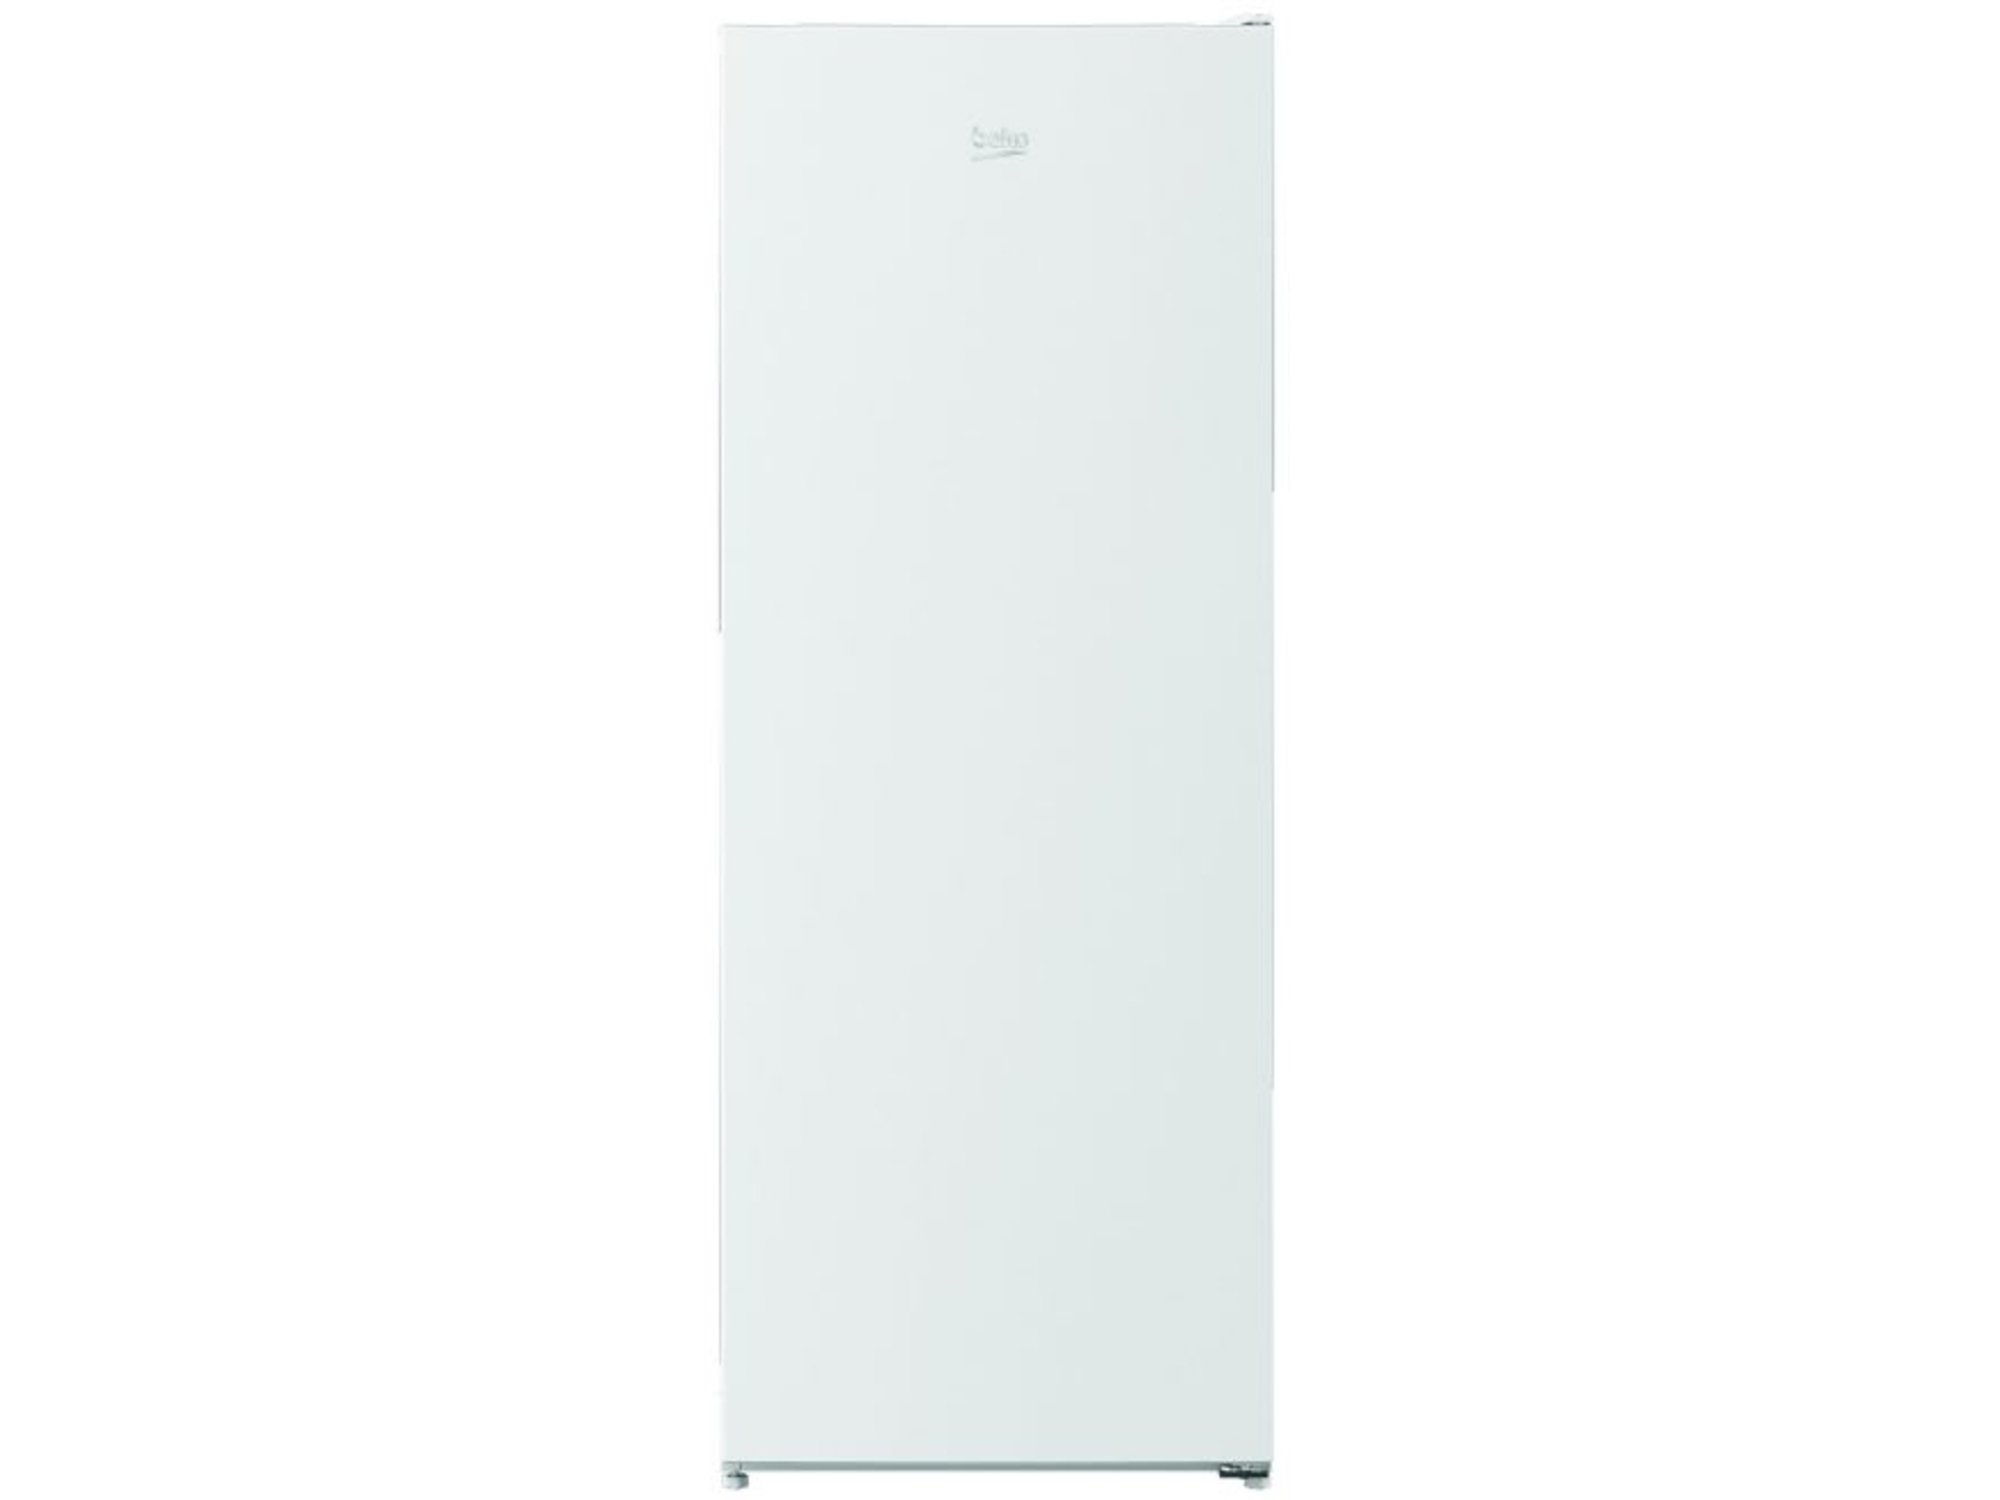 BEKO prostostoječi hladilnik brez zamrzovalnika RSSA250K30WN